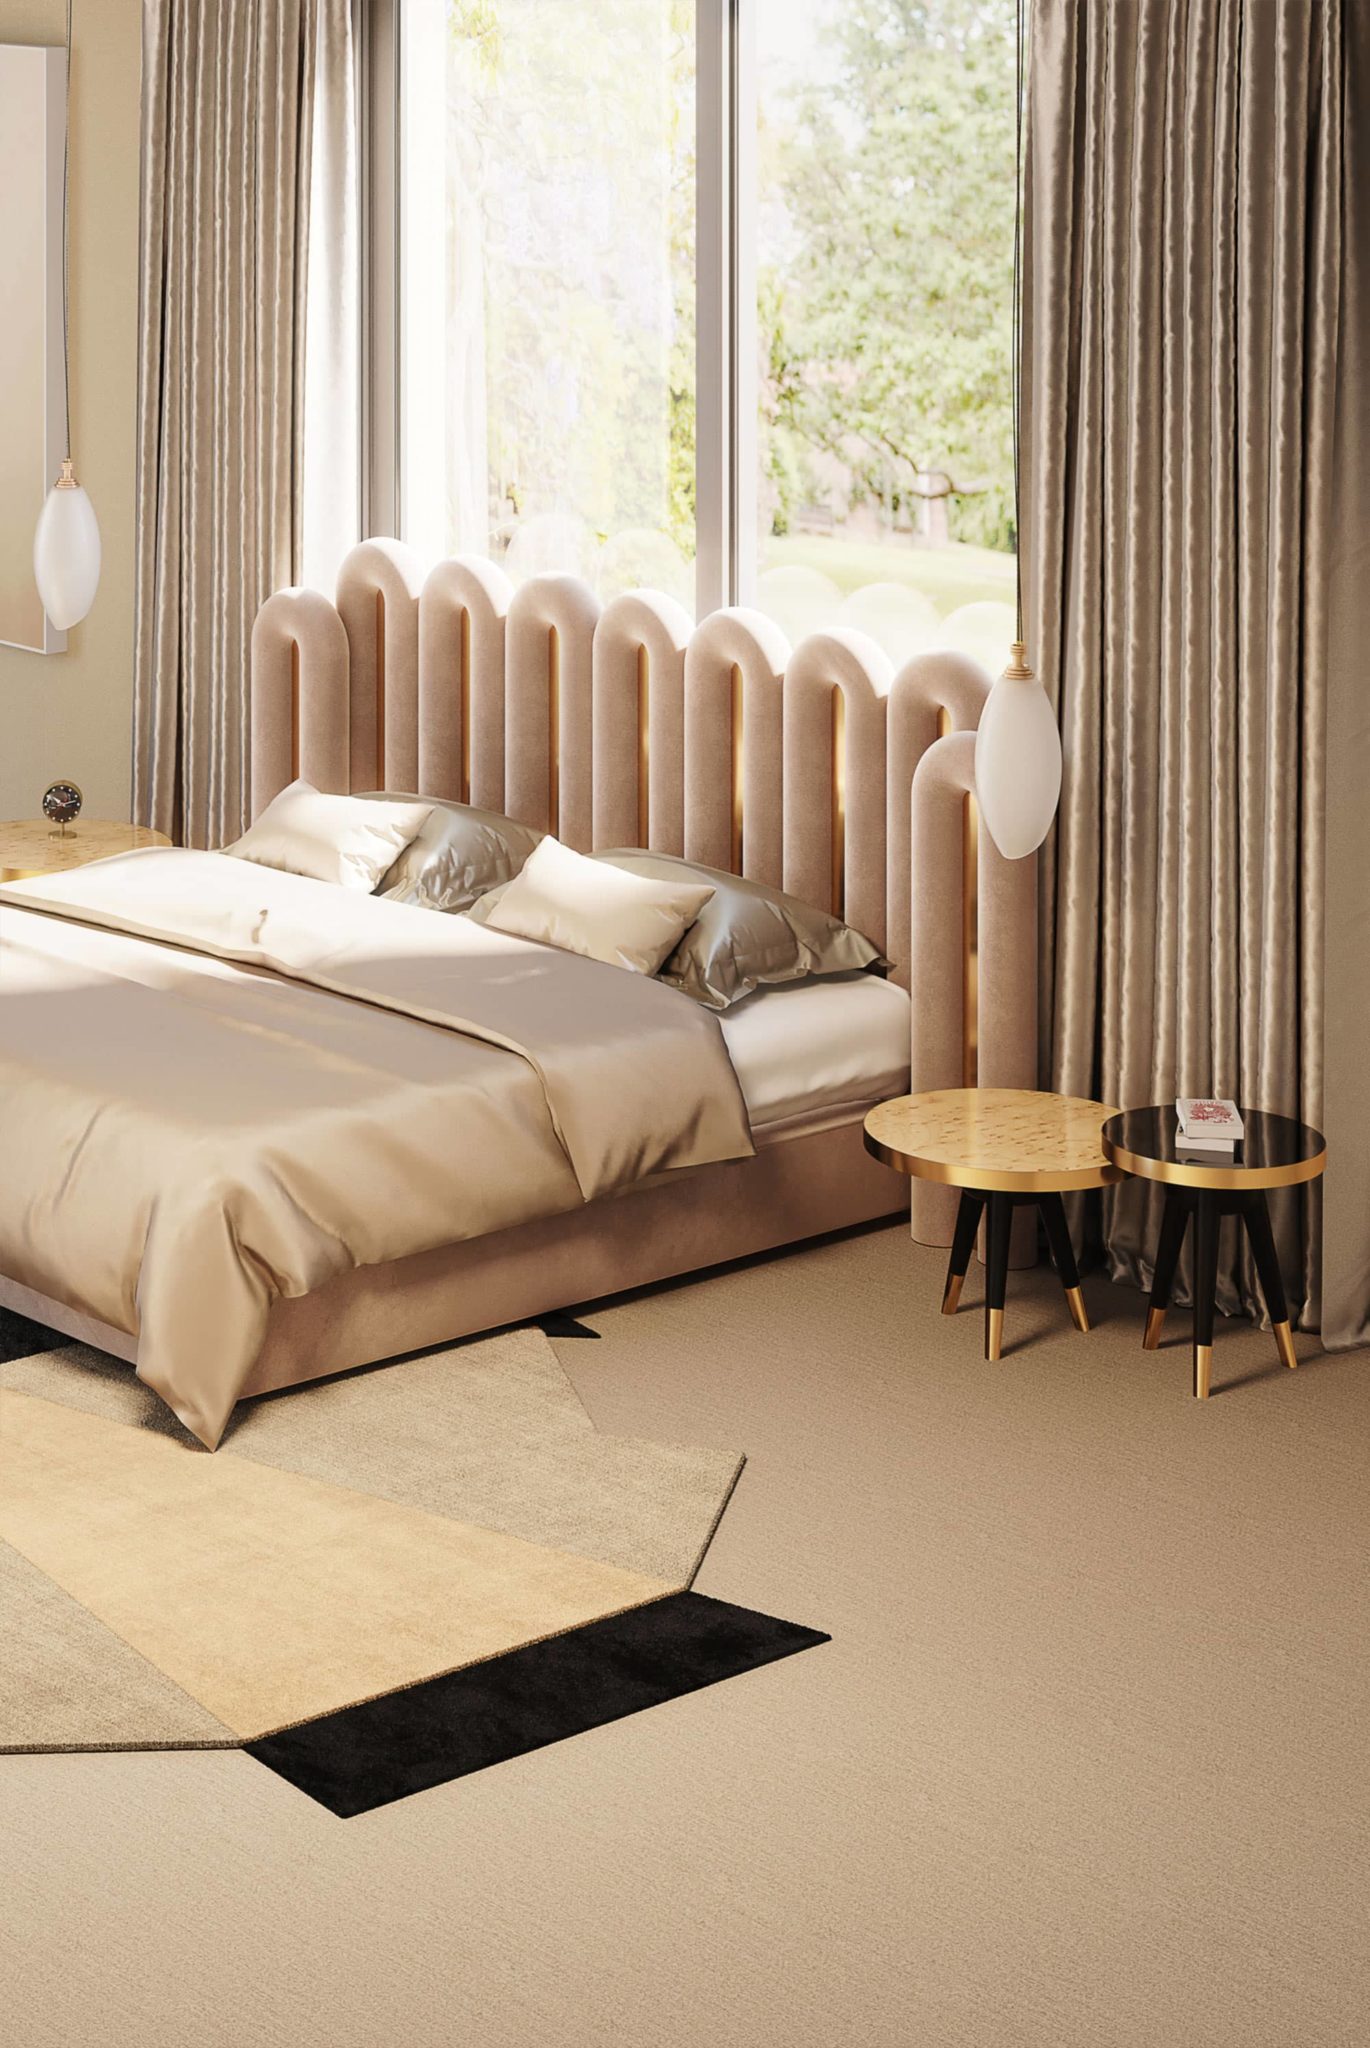 luxury bedroom by HOMMÉS Studio in soft pink tones